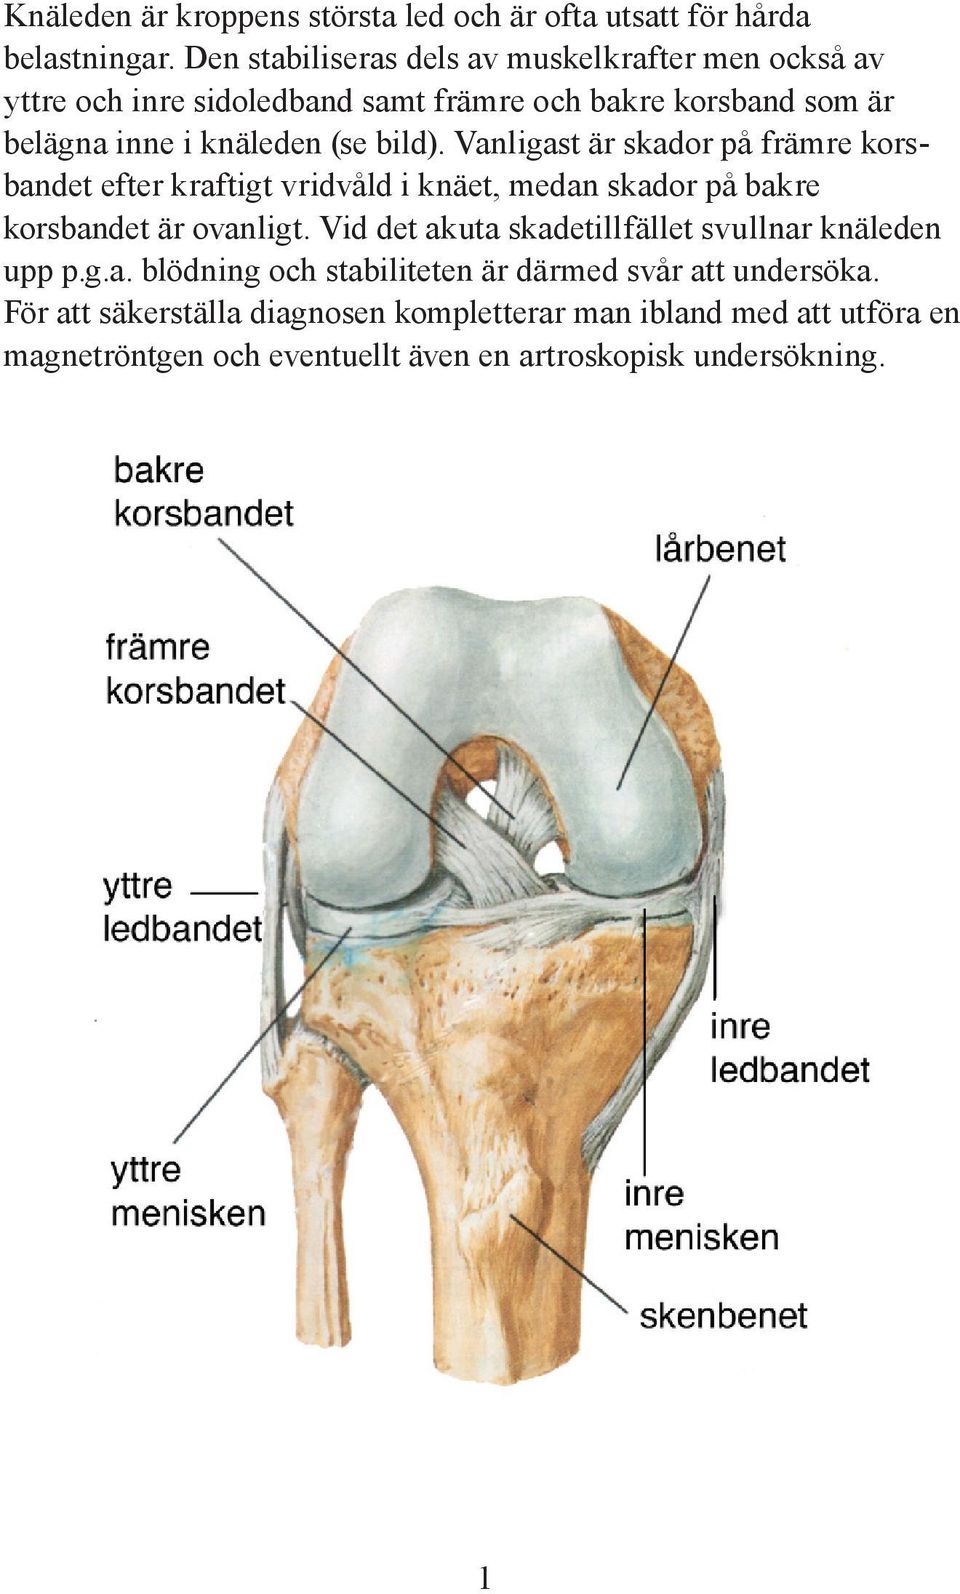 bild). Vanligast är skador på främre korsbandet efter kraftigt vridvåld i knäet, medan skador på bakre korsbandet är ovanligt.